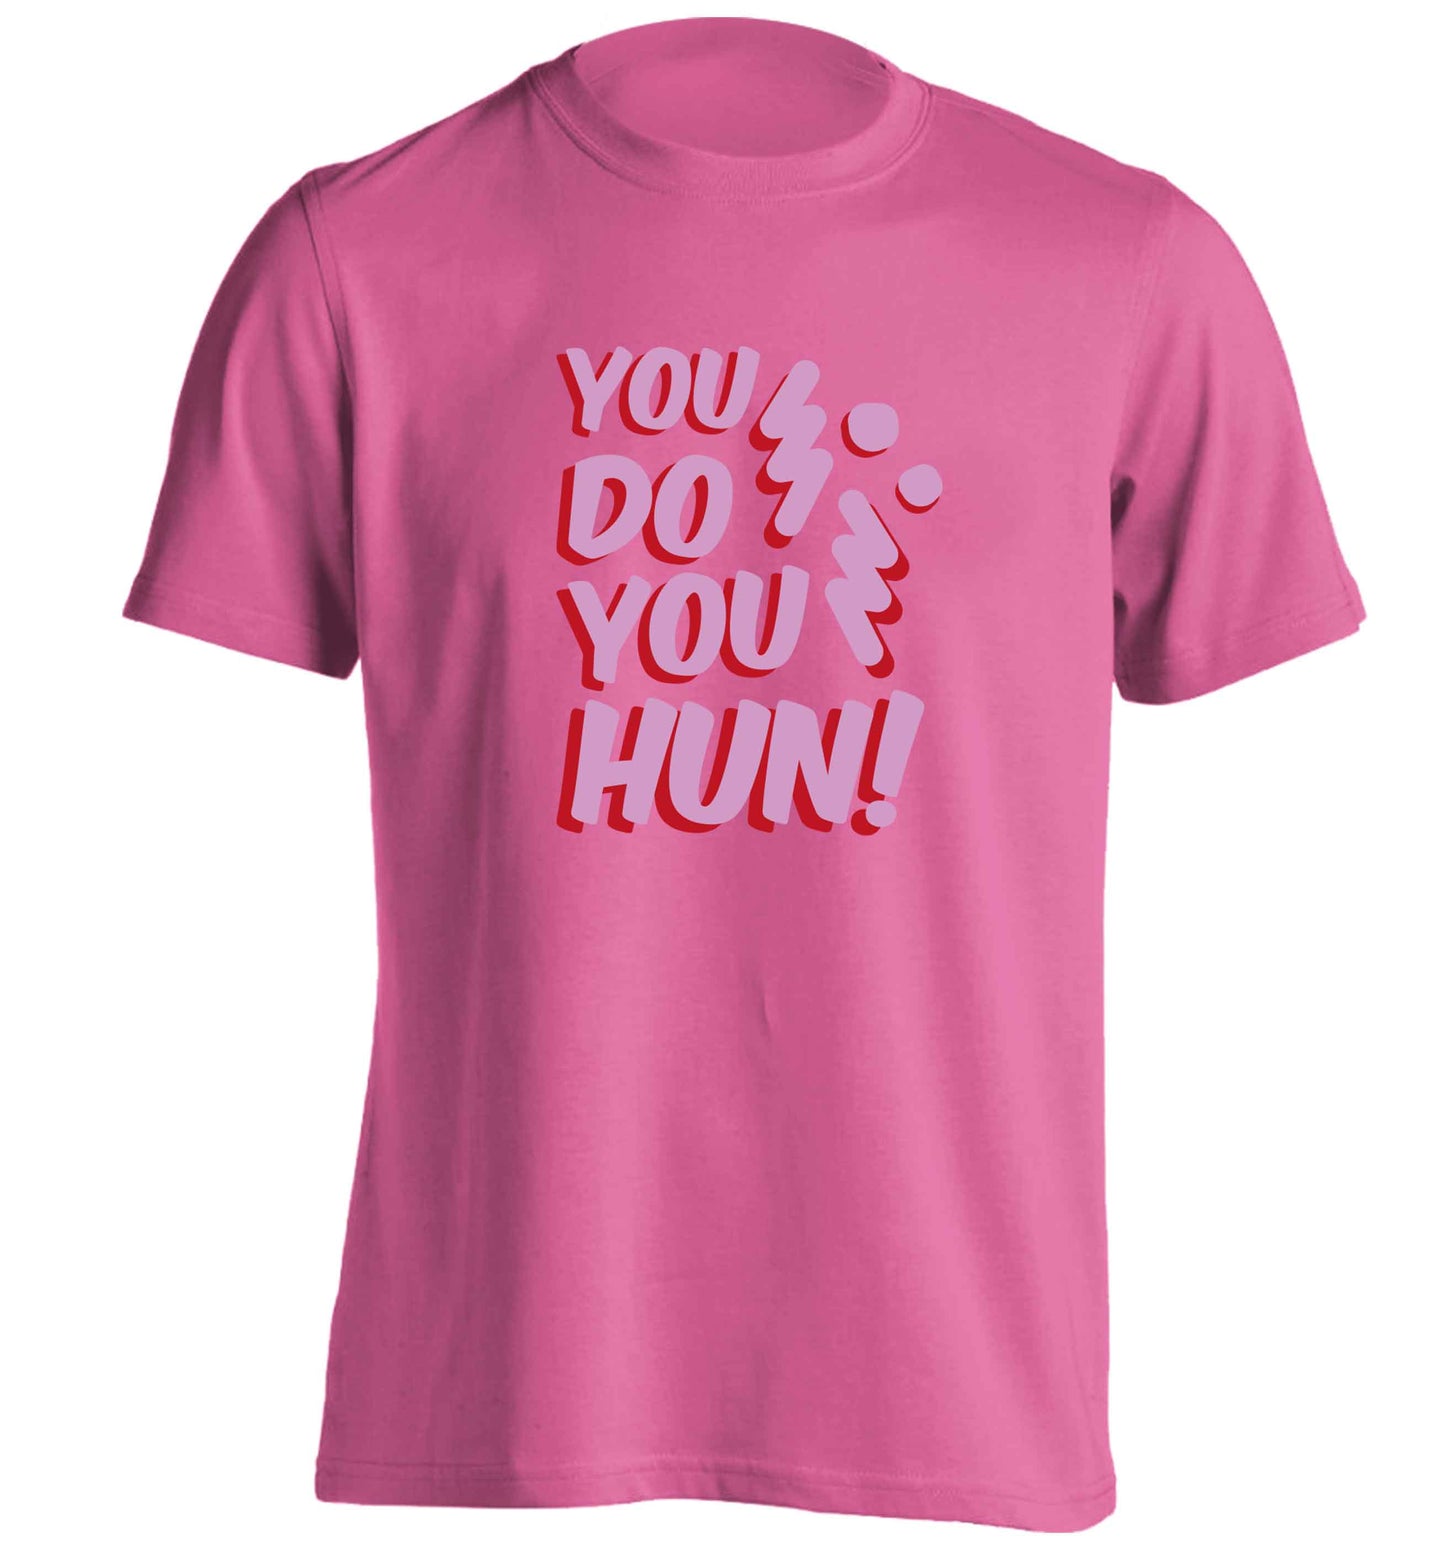 You do you hun adults unisex pink Tshirt 2XL